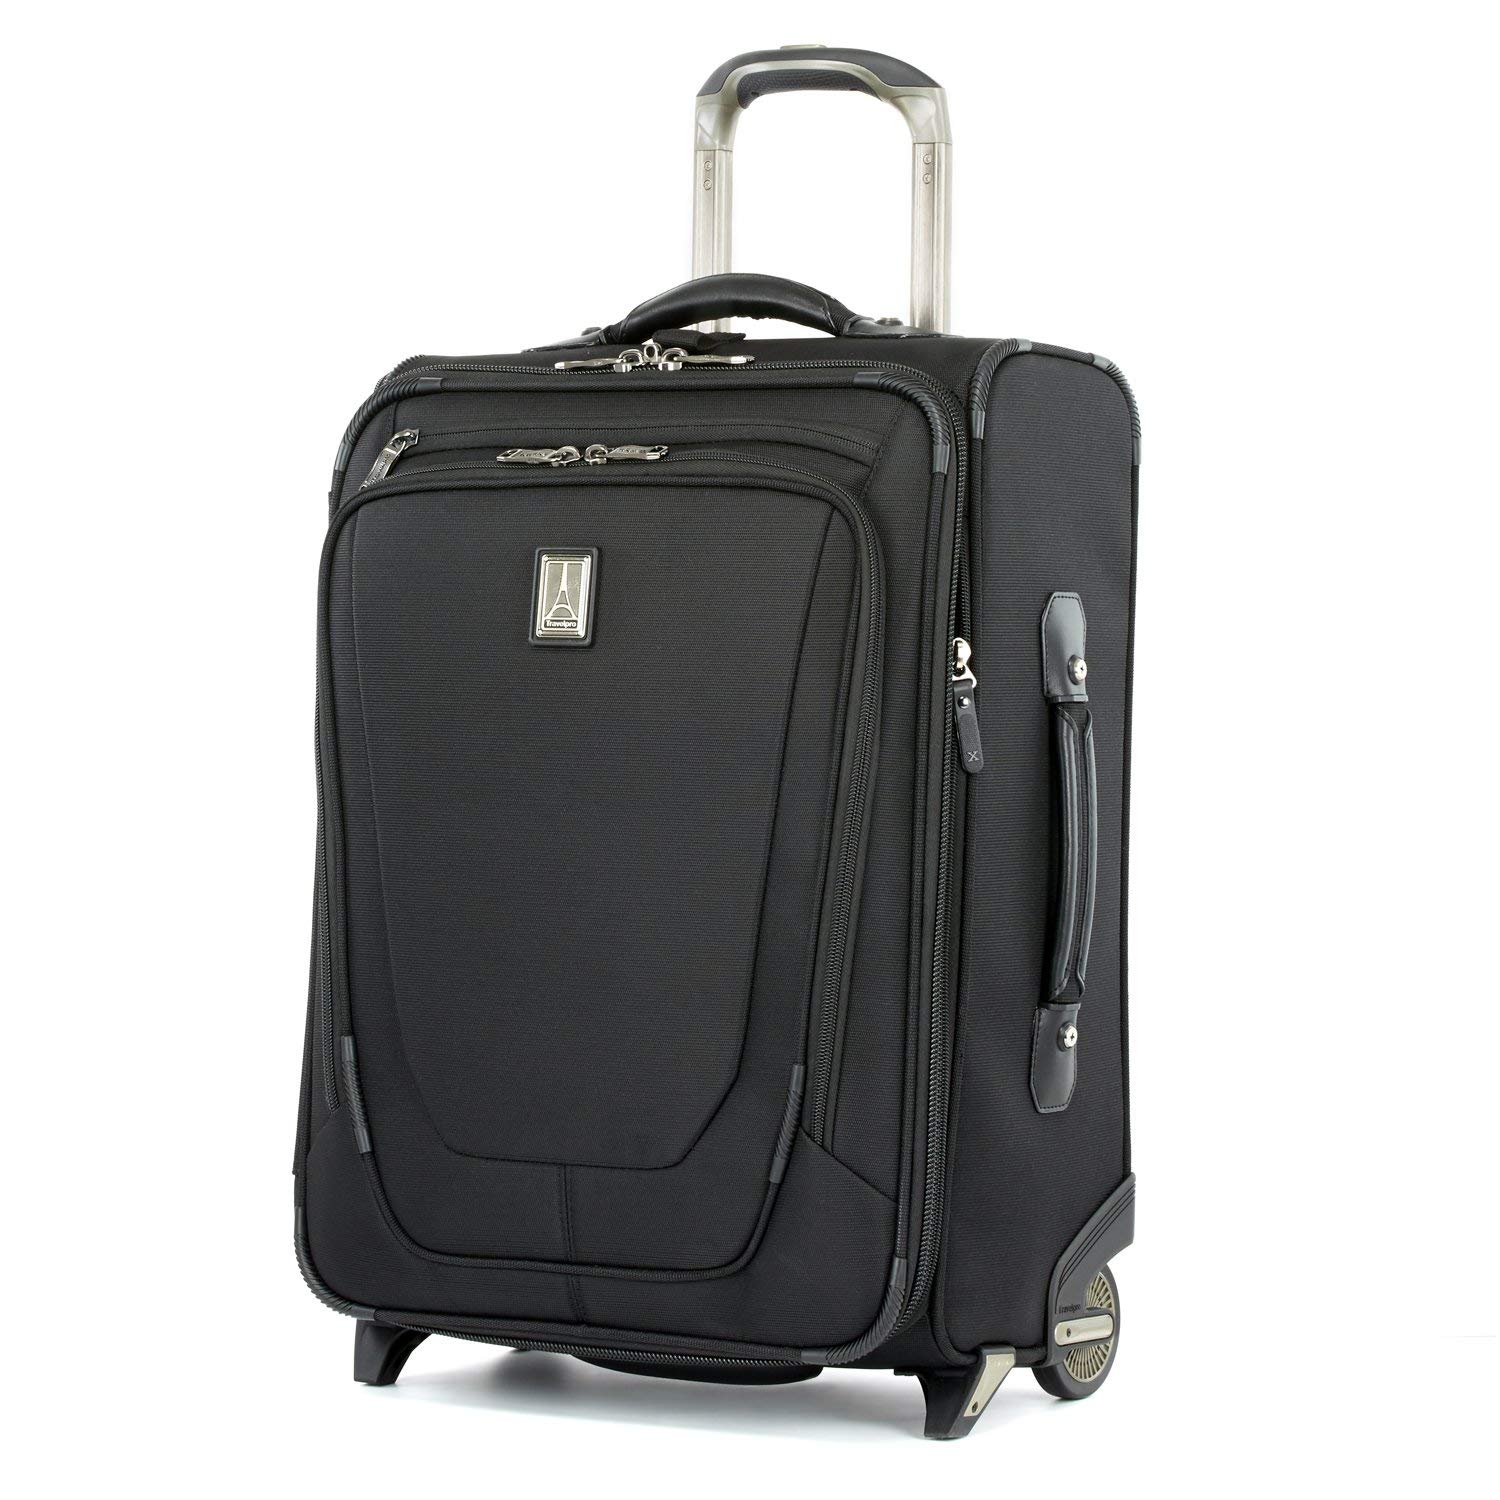 smart luggage, incase luggage, smart suitcase,